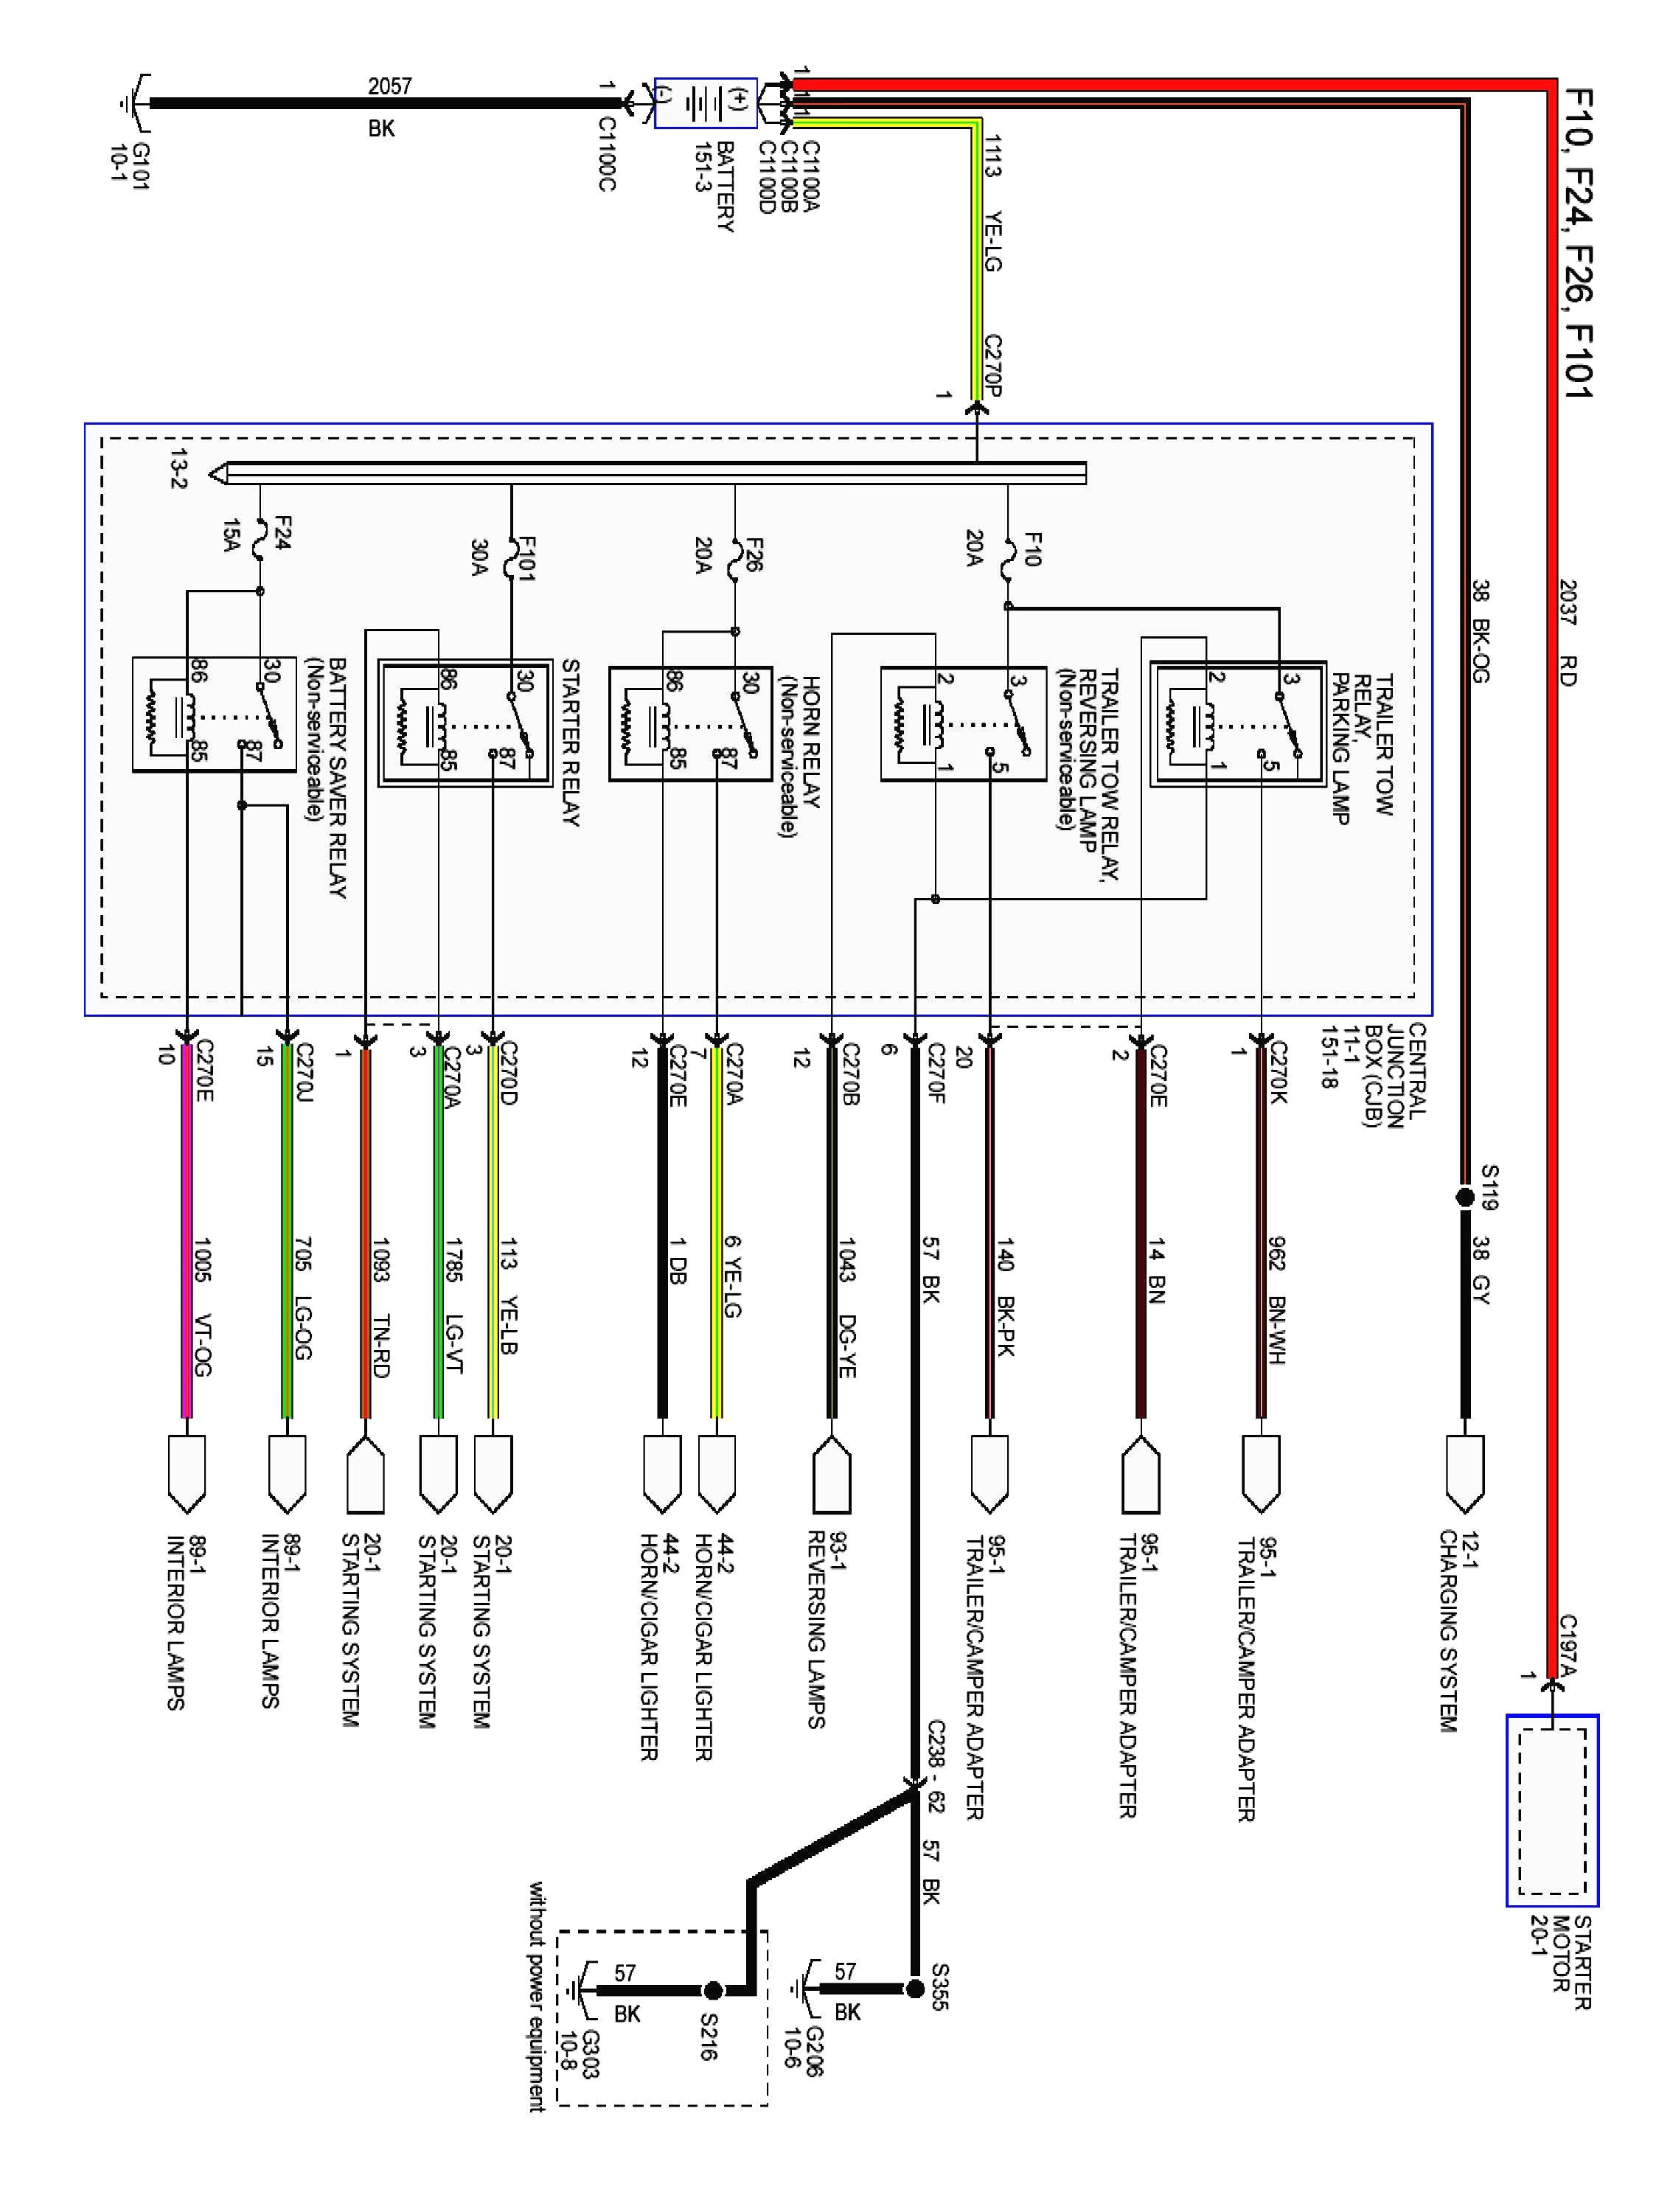 2007 cougar wiring diagram data schematic diagram 2007 cougar wiring diagram